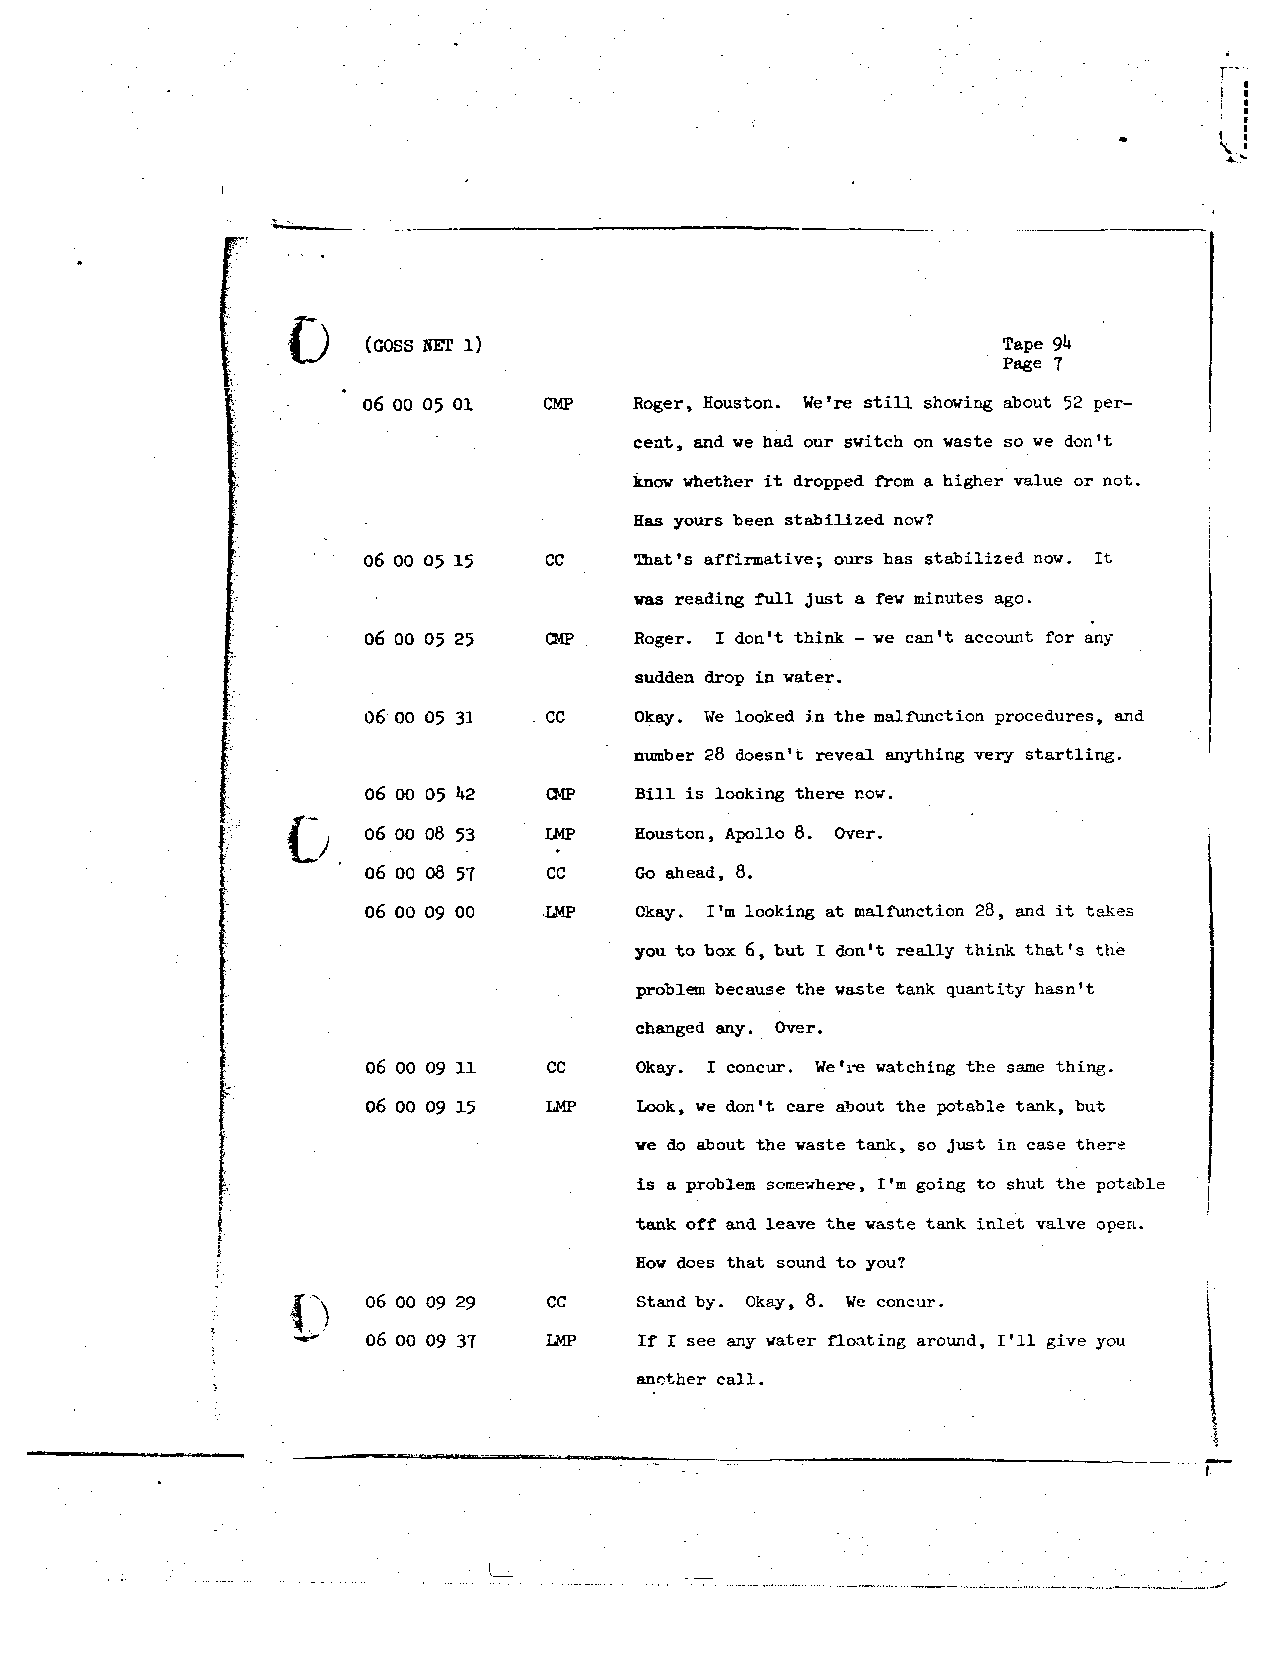 Page 745 of Apollo 8’s original transcript